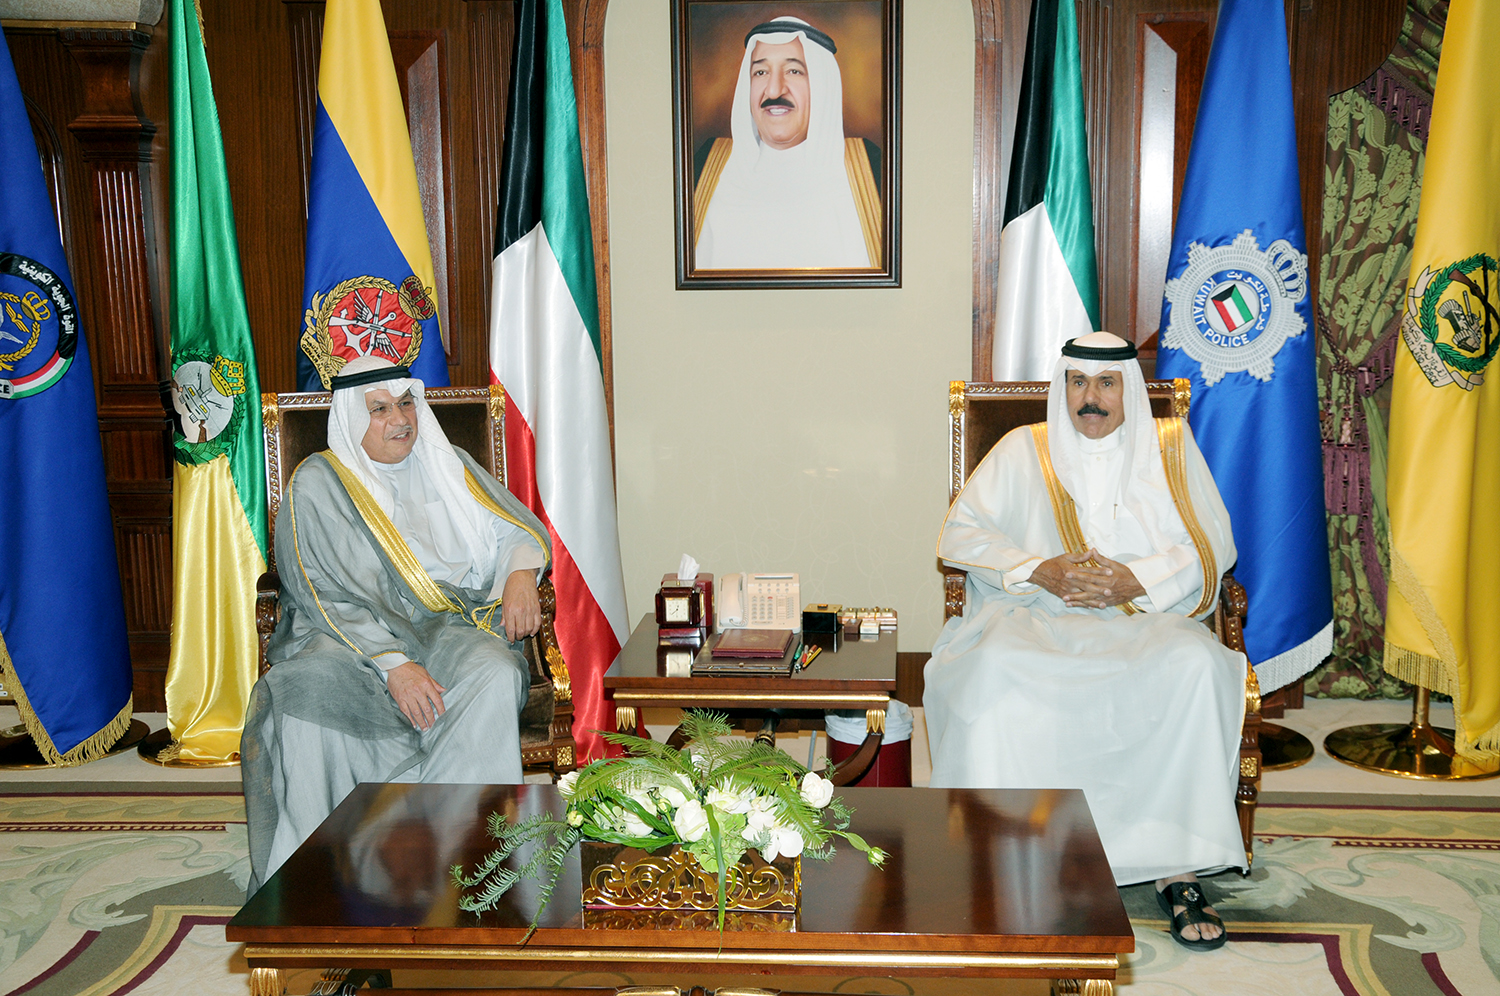 His Highness the Crown Prince Sheikh Nawaf Al-Ahmad Al-Jaber Al-Sabah received at Bayan Palace the Deputy Prime Minister and Minister of Defense Sheikh Khaled Al-Jarrah Al-Sabah